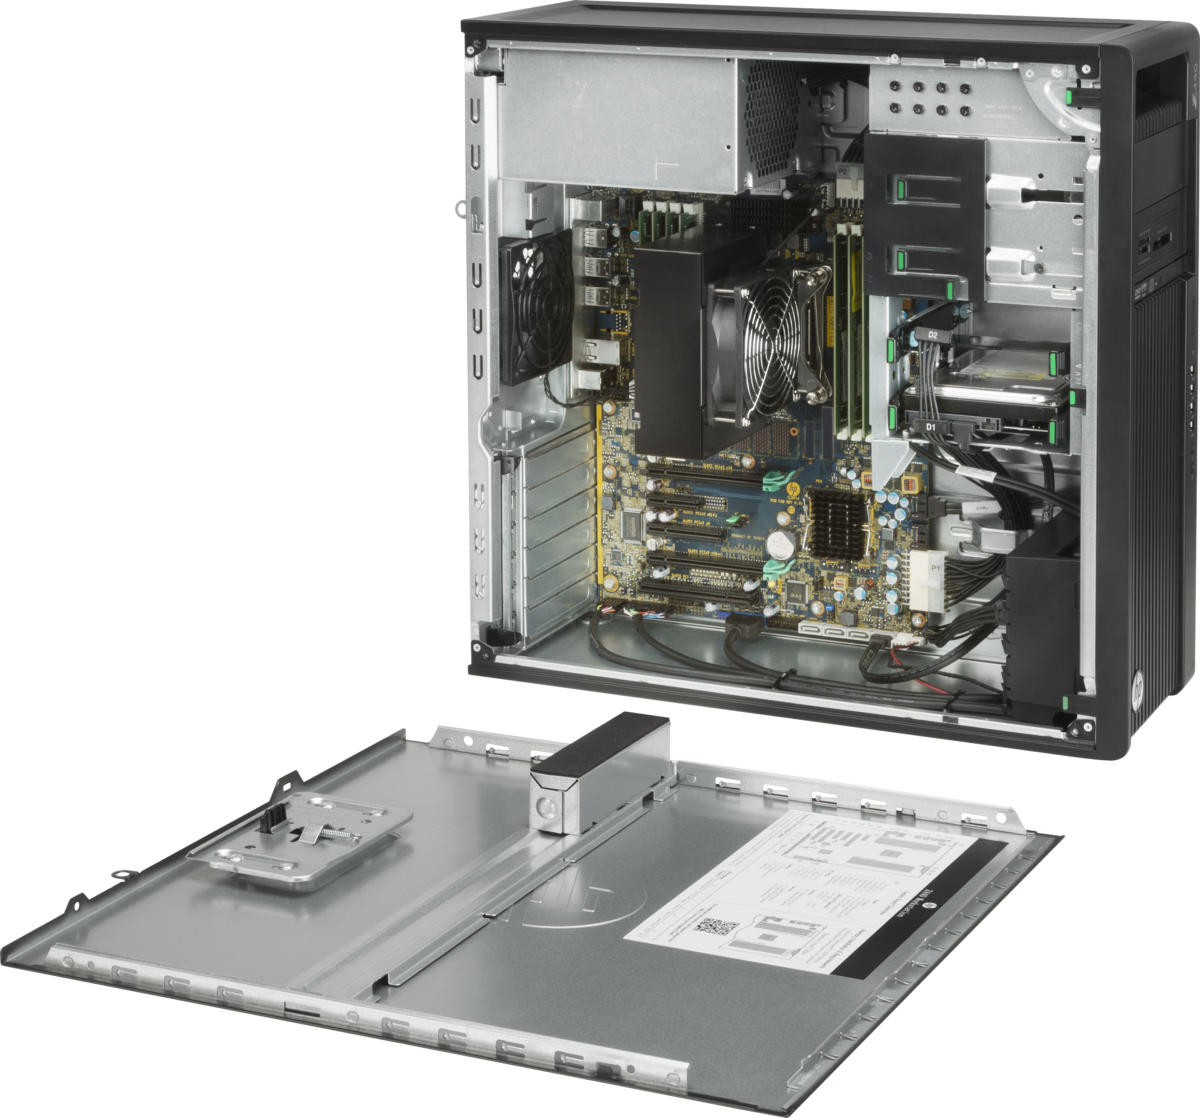 デスクトップパソコン hp Z440 Workstation Xeon E5-1620 v4 3.5GHz